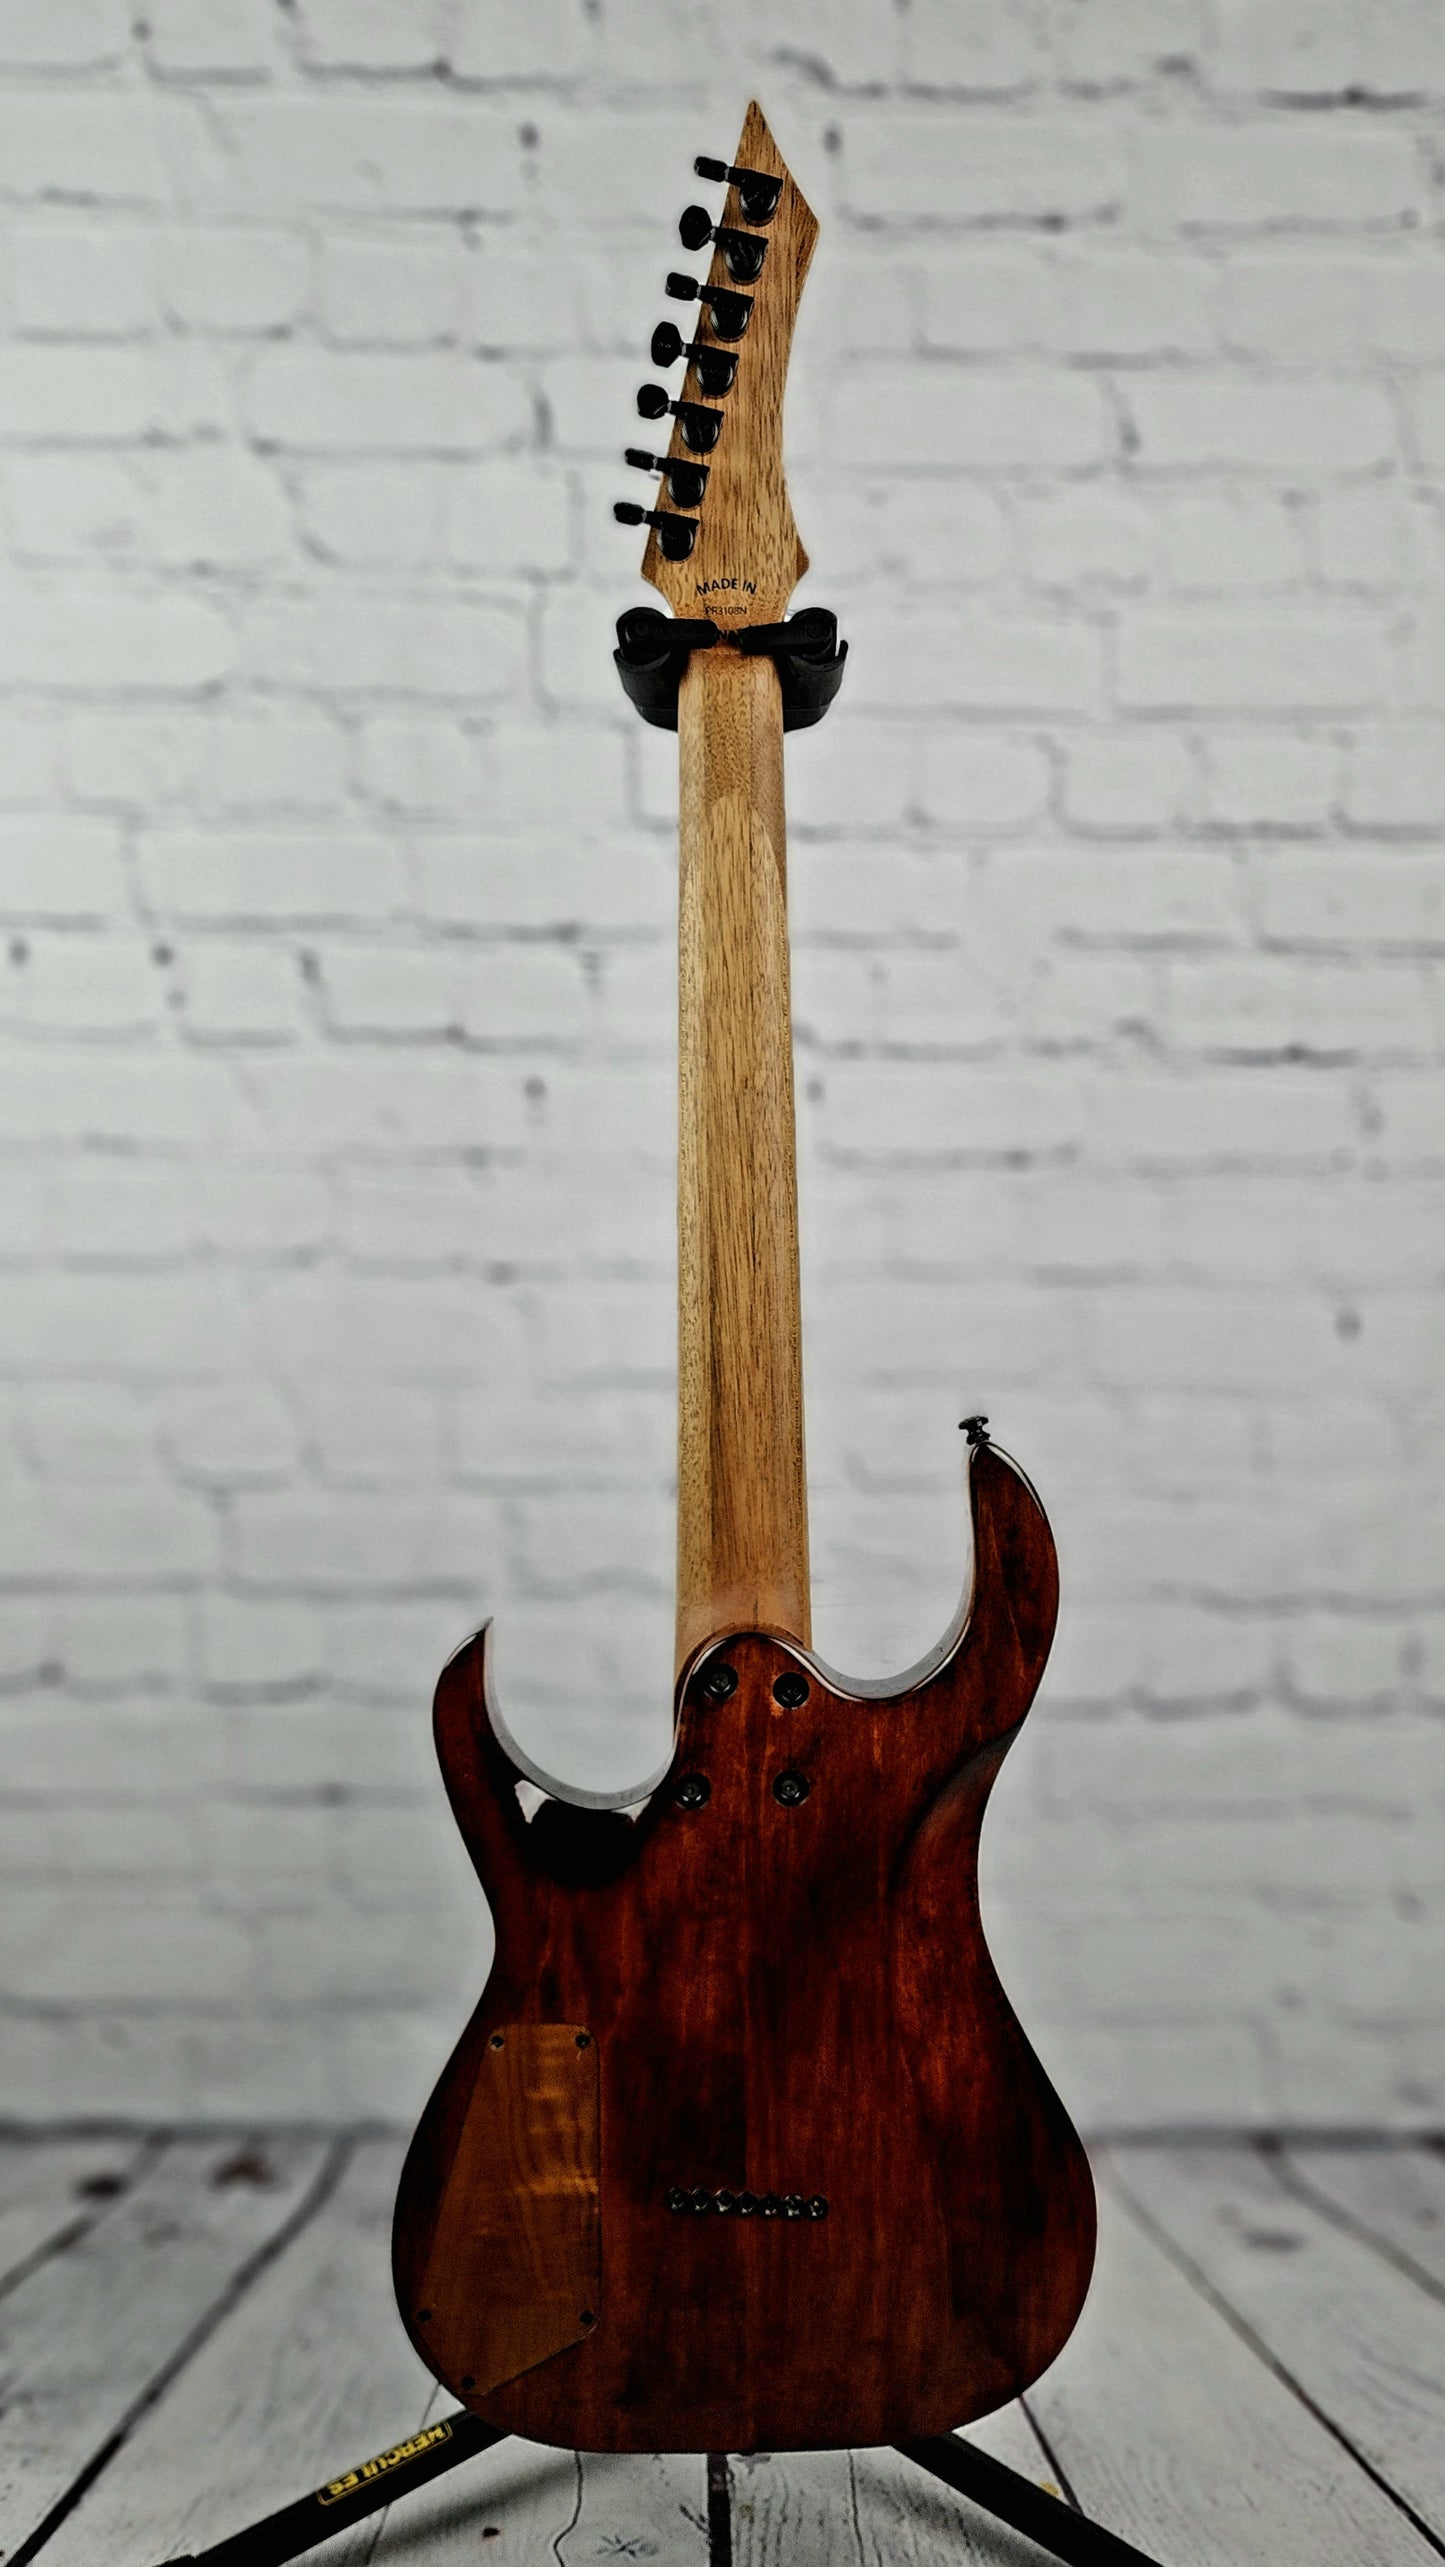 Charbonneau Guitars Scimtar 7S 7 String Electric Guitar Purple Burl